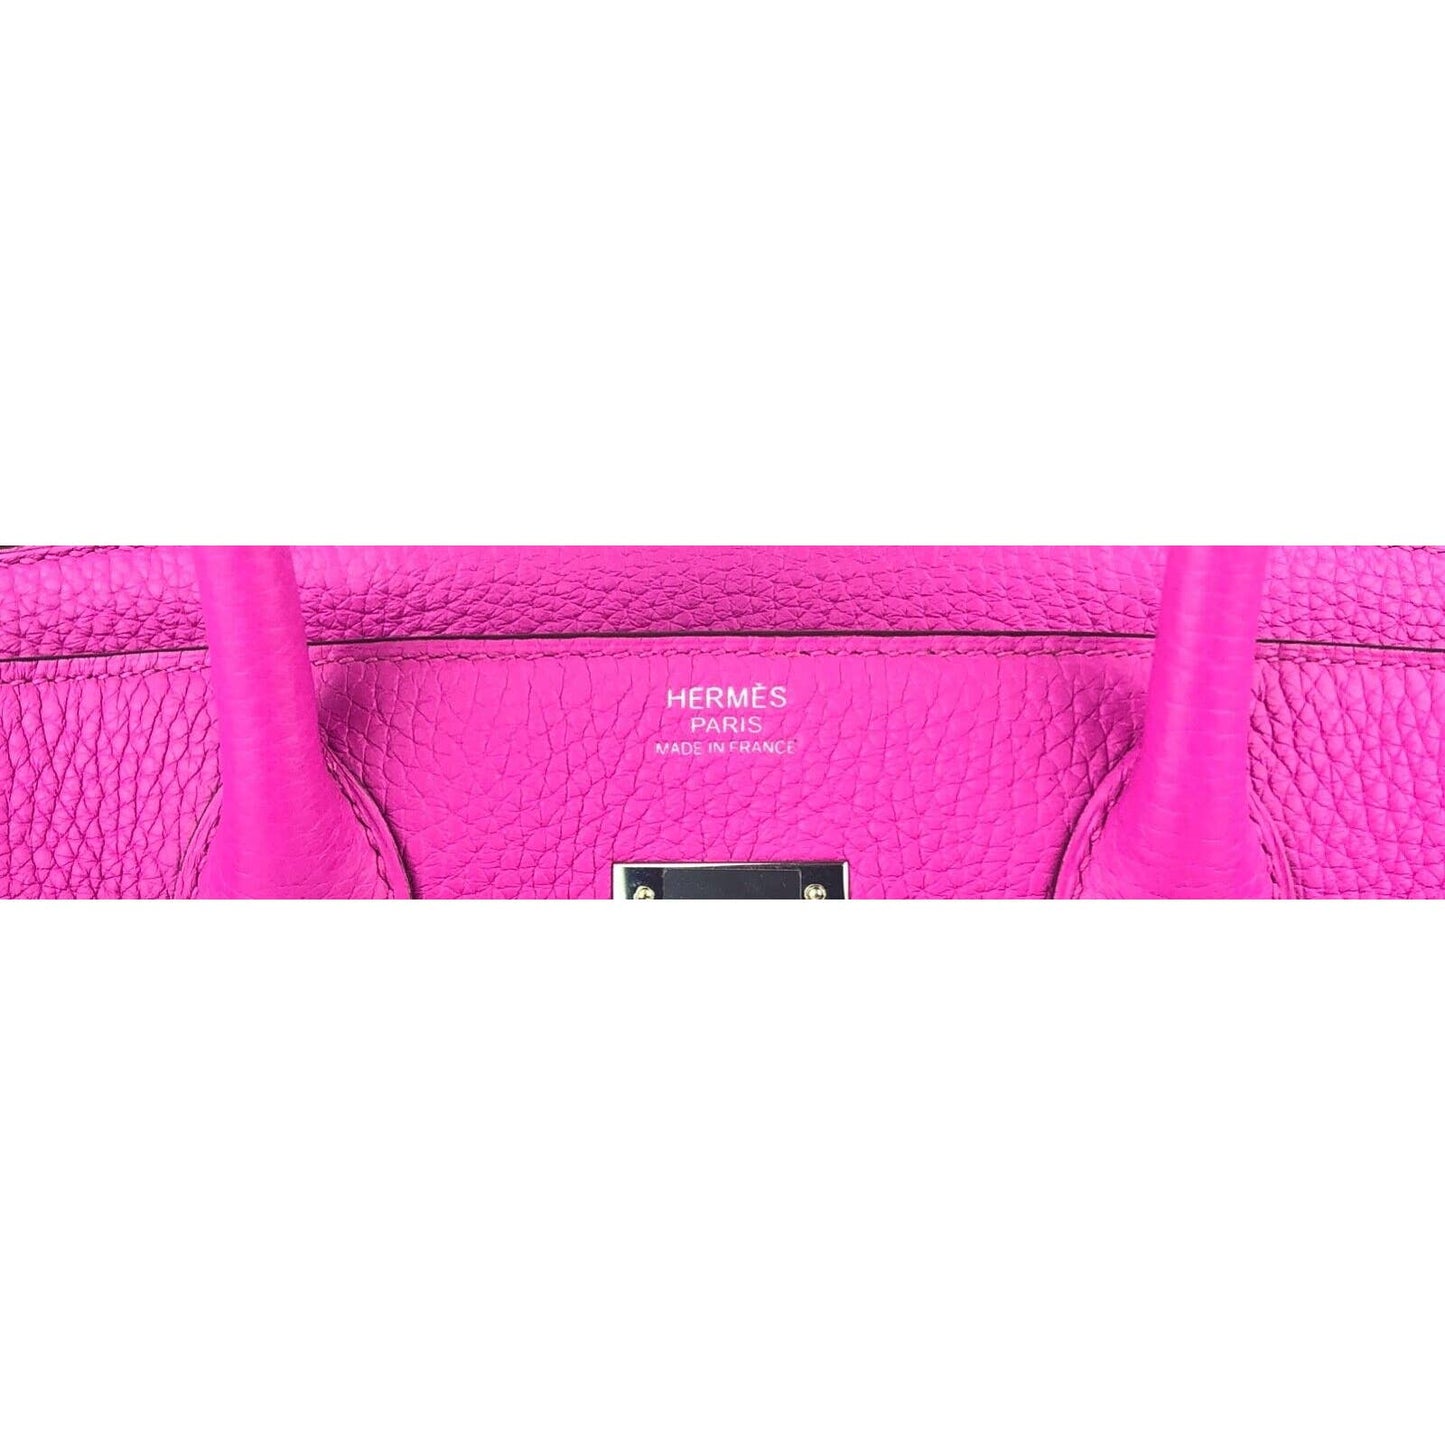 Hermes Birkin 30 Magnolia Pink Purple Leather Bag Handbag Palladium Hardware